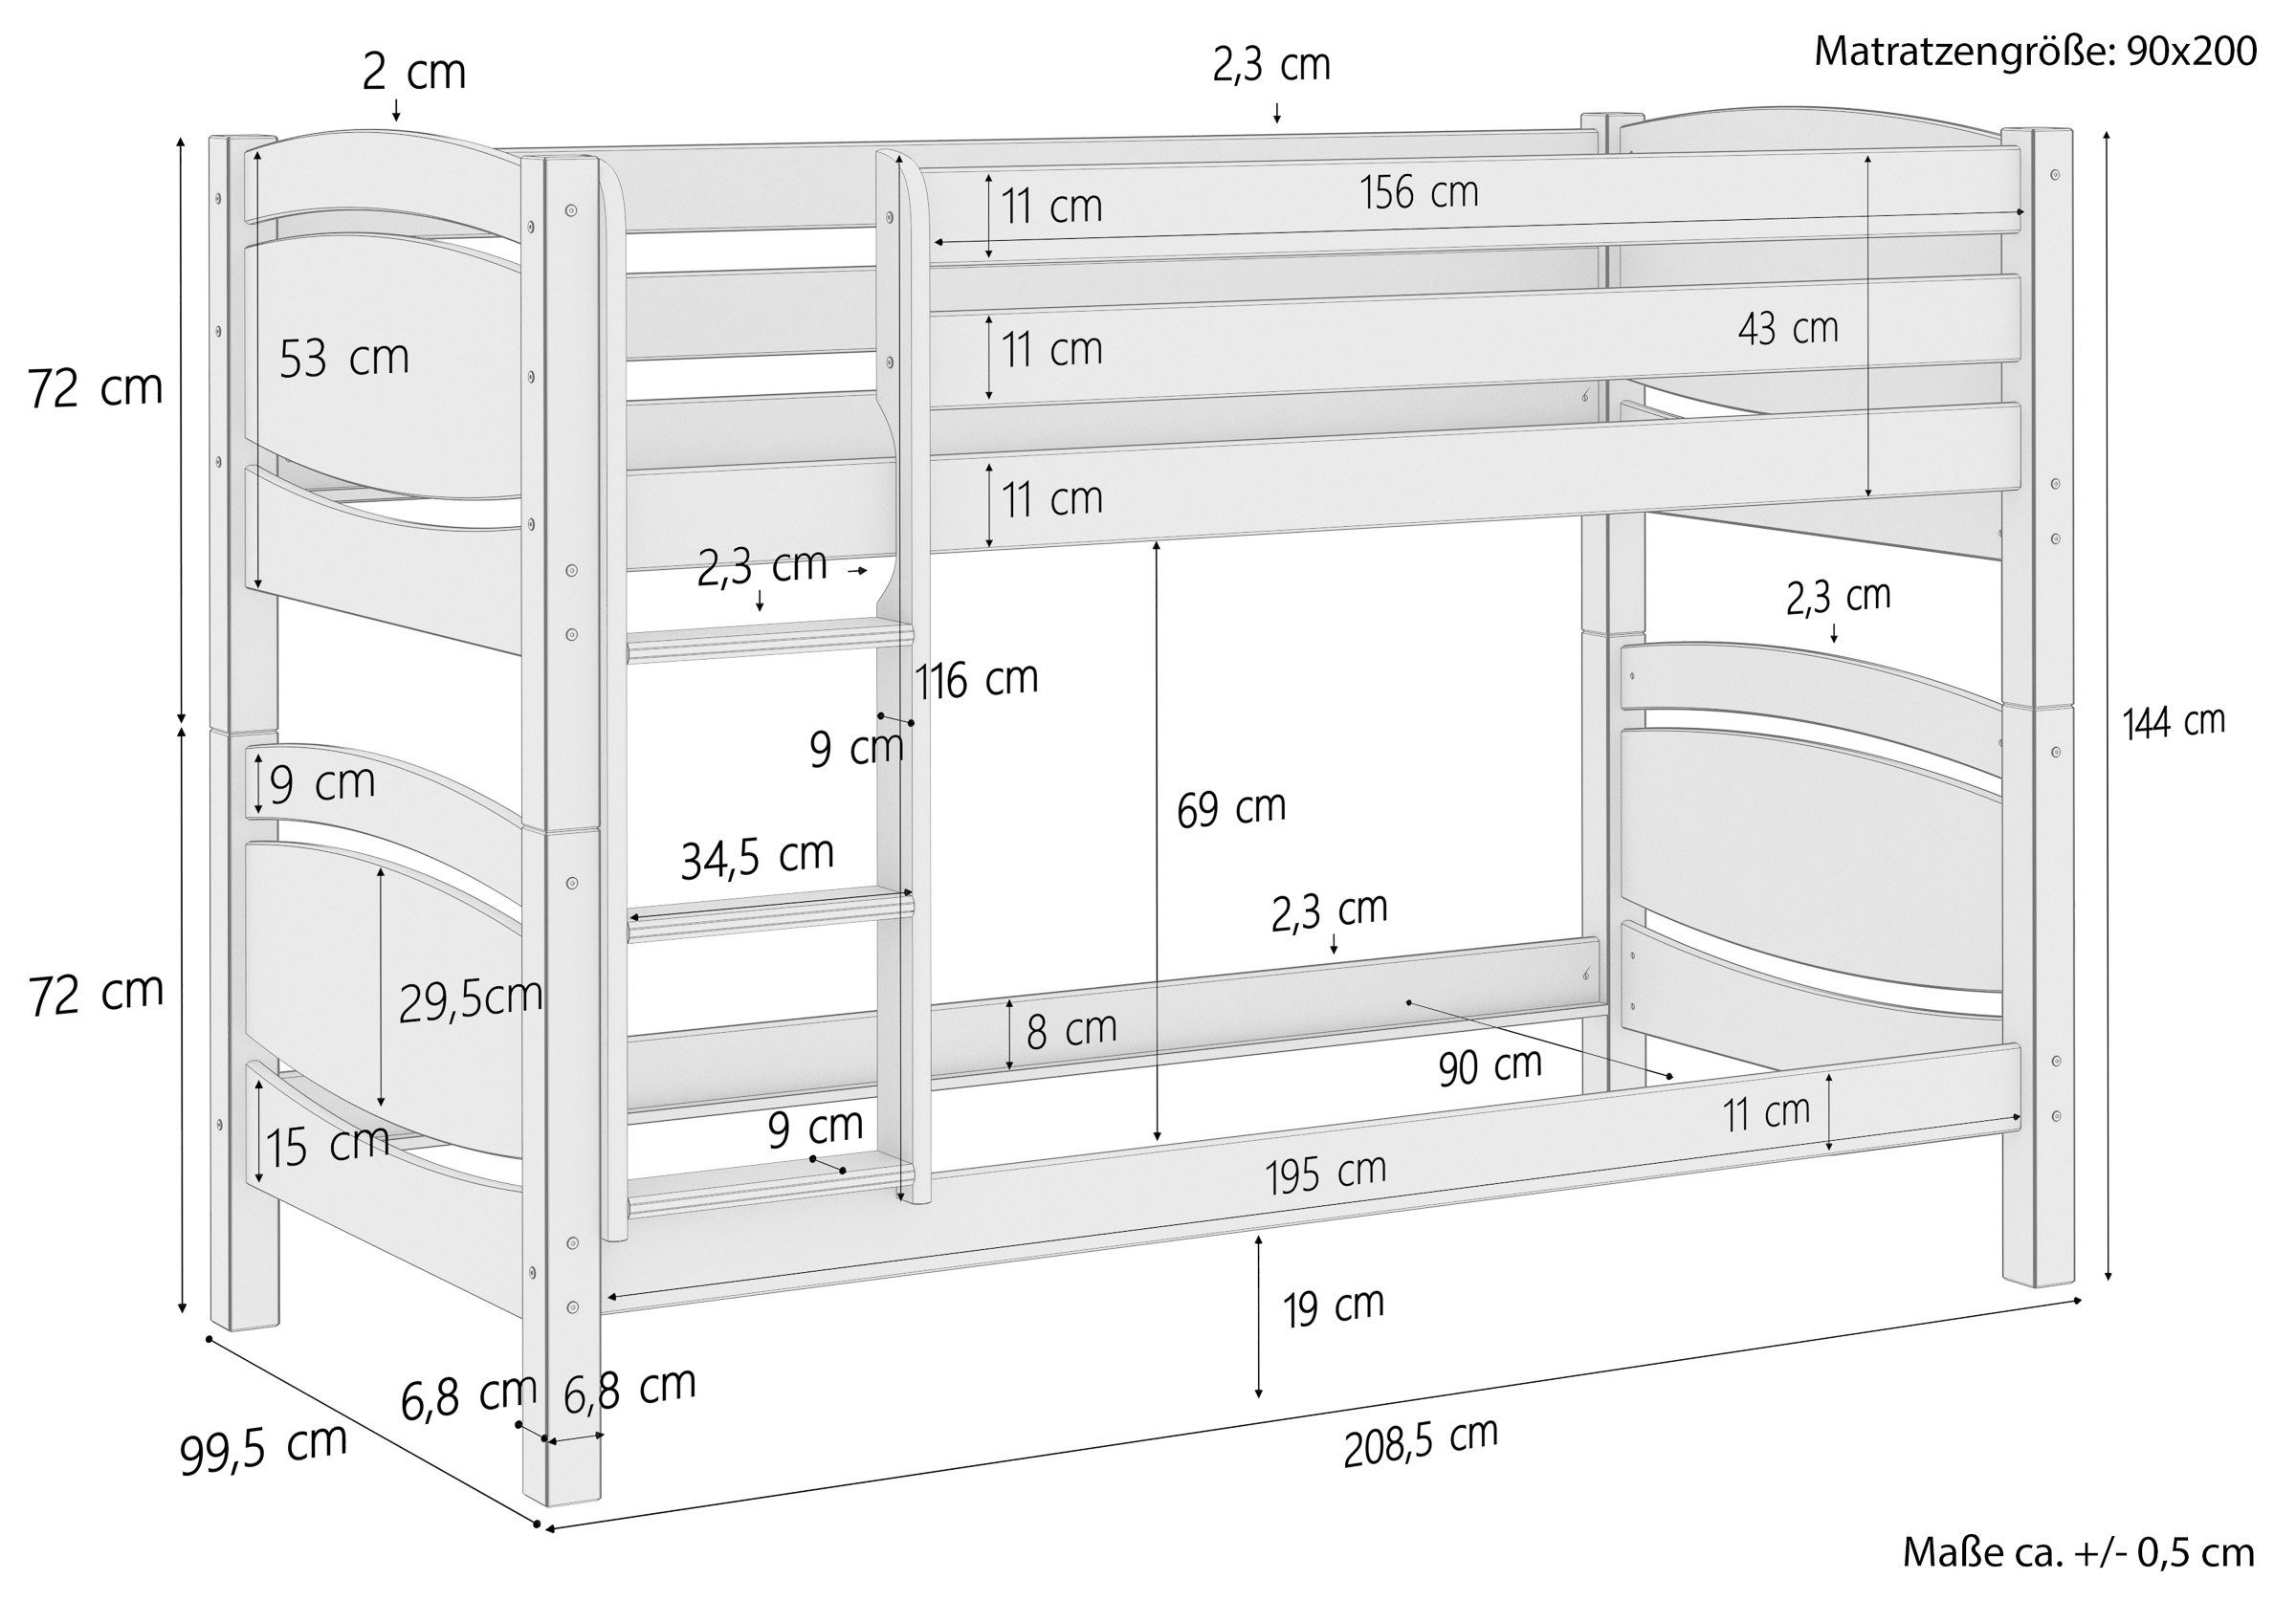 90x200 mit Stockbett Kiefer und Etagenbett ERST-HOLZ Rollrost Matratzen massiv